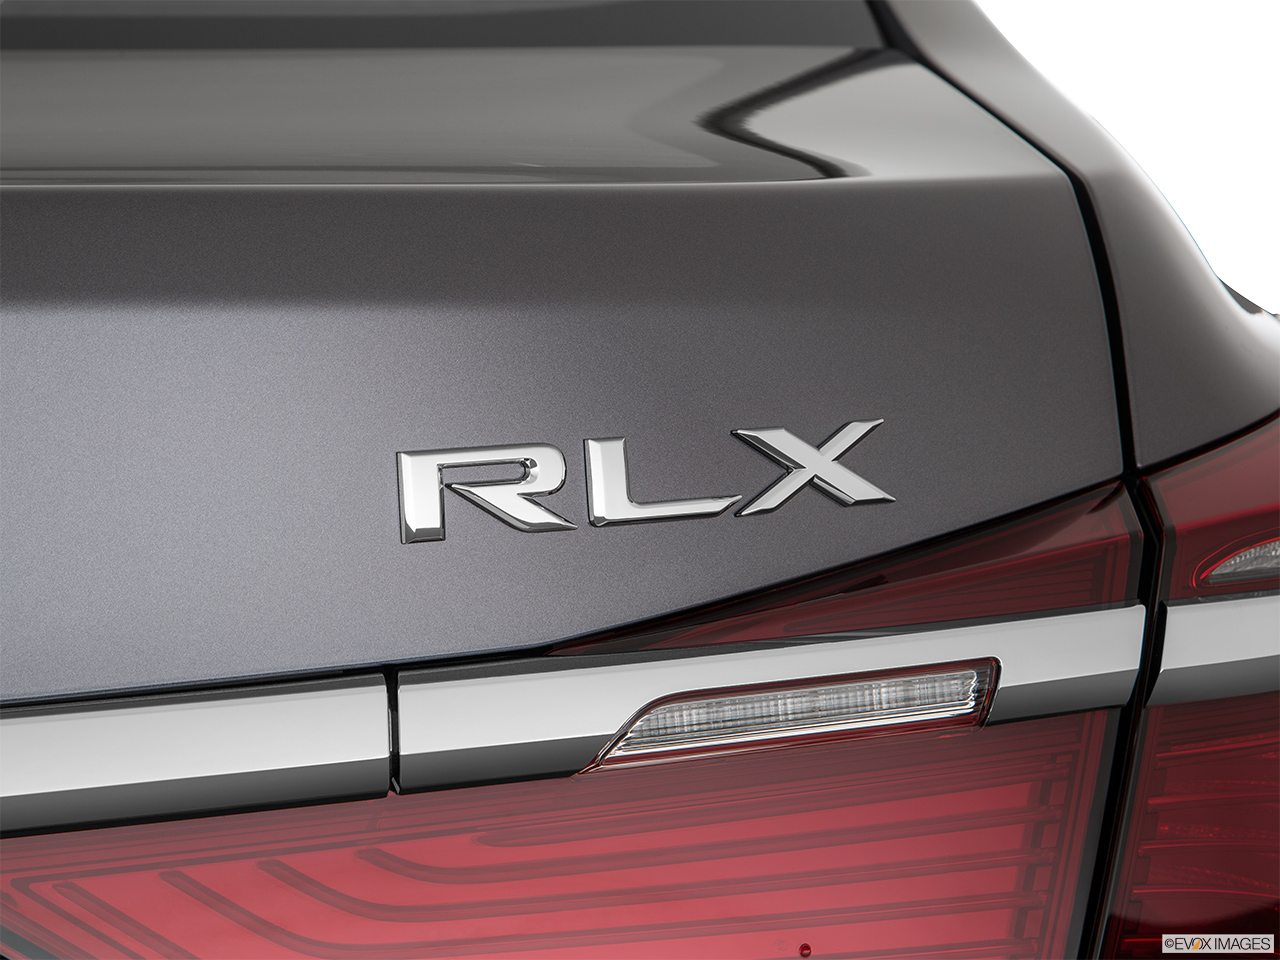 2020 Acura RLX Sport Hybrid SH-AWD Rear model badge/emblem 